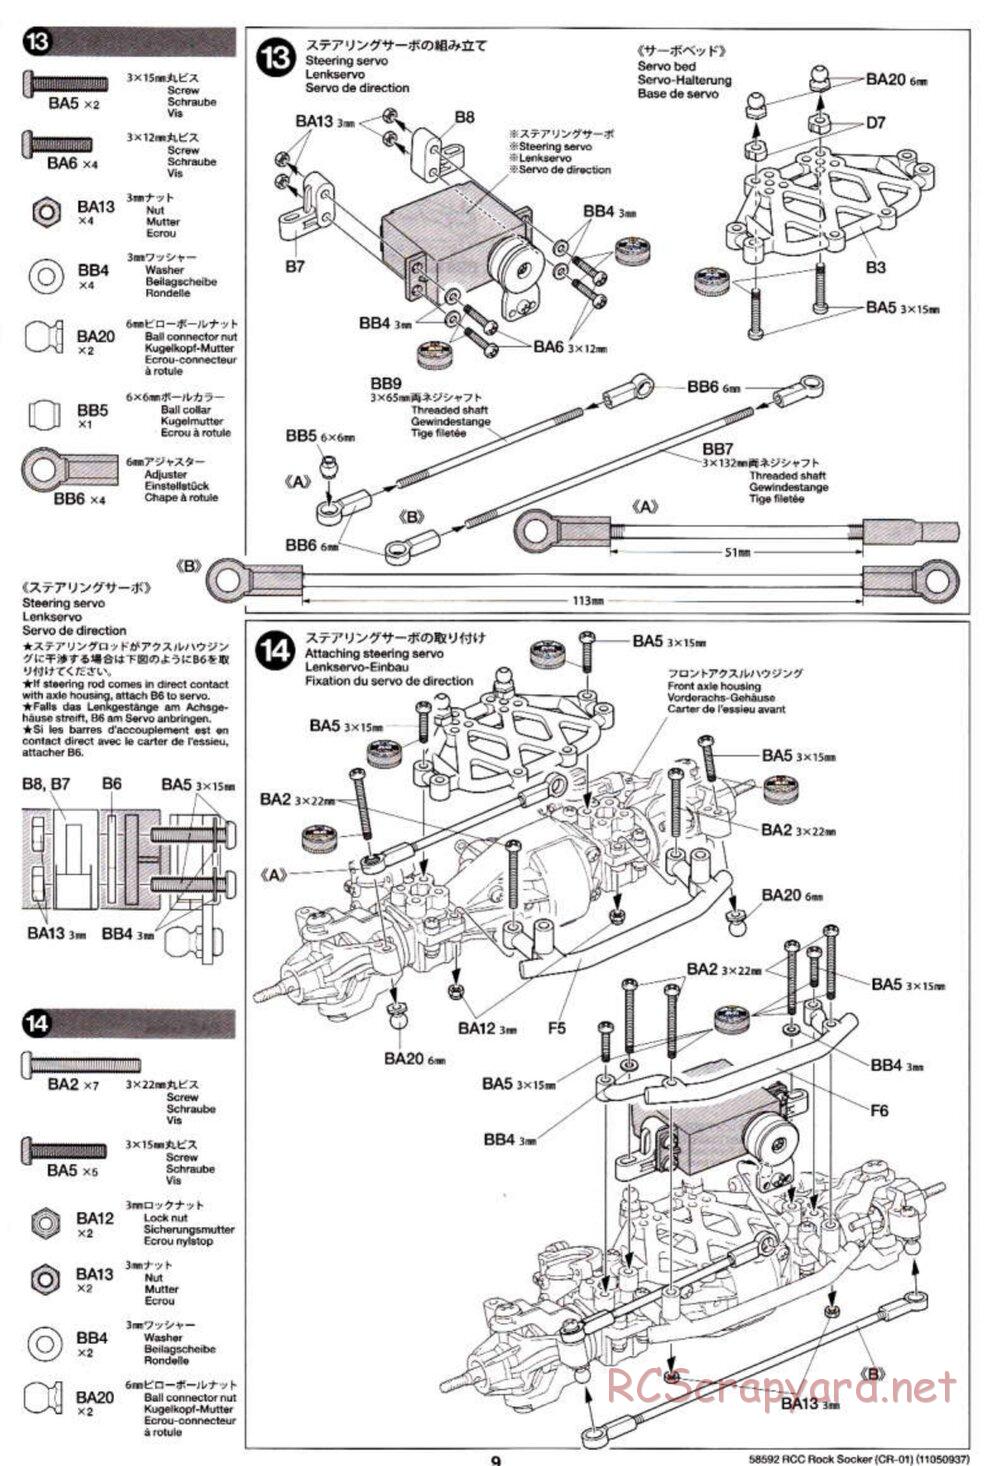 Tamiya - Rock Socker - CR-01 Chassis - Manual - Page 9